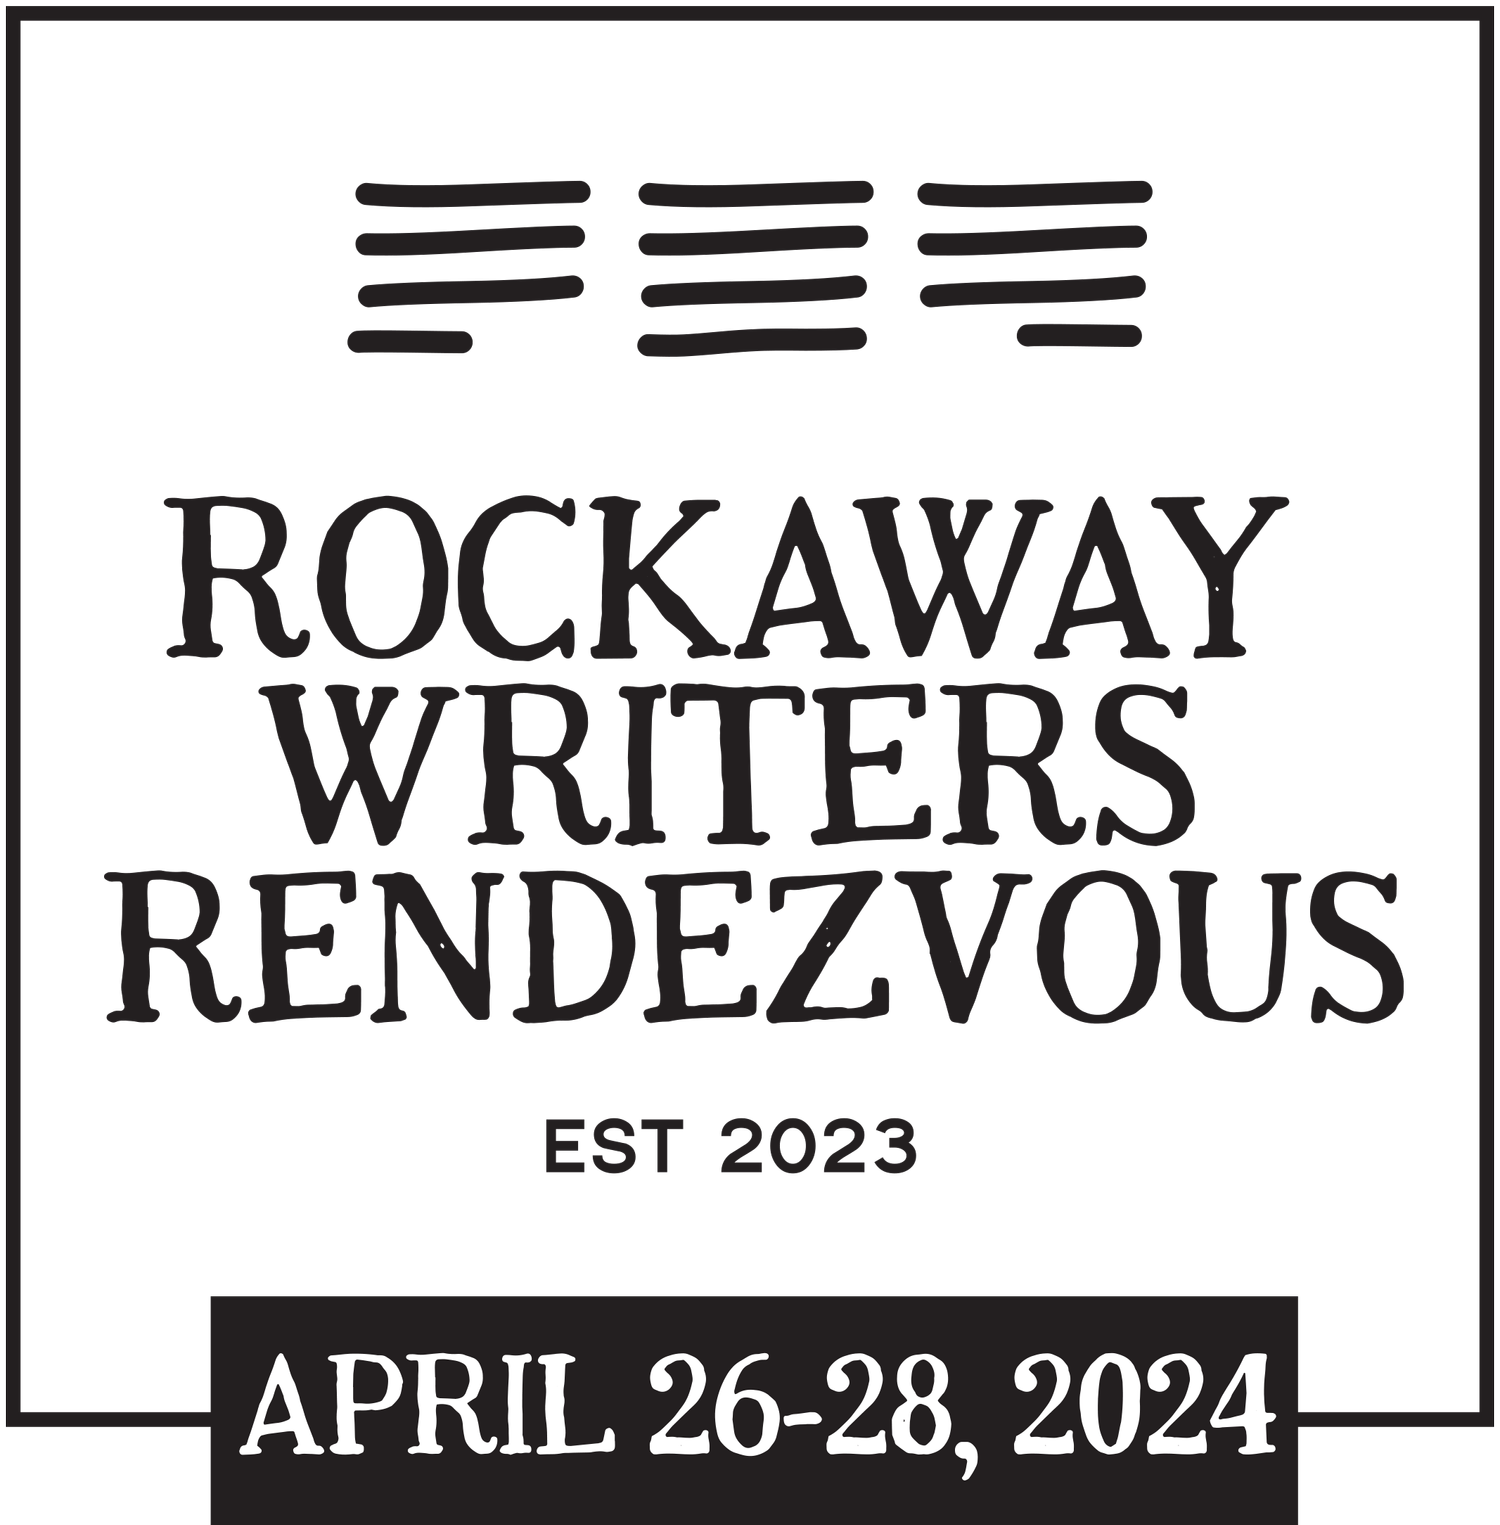 Rockaway Writers Rendezvous